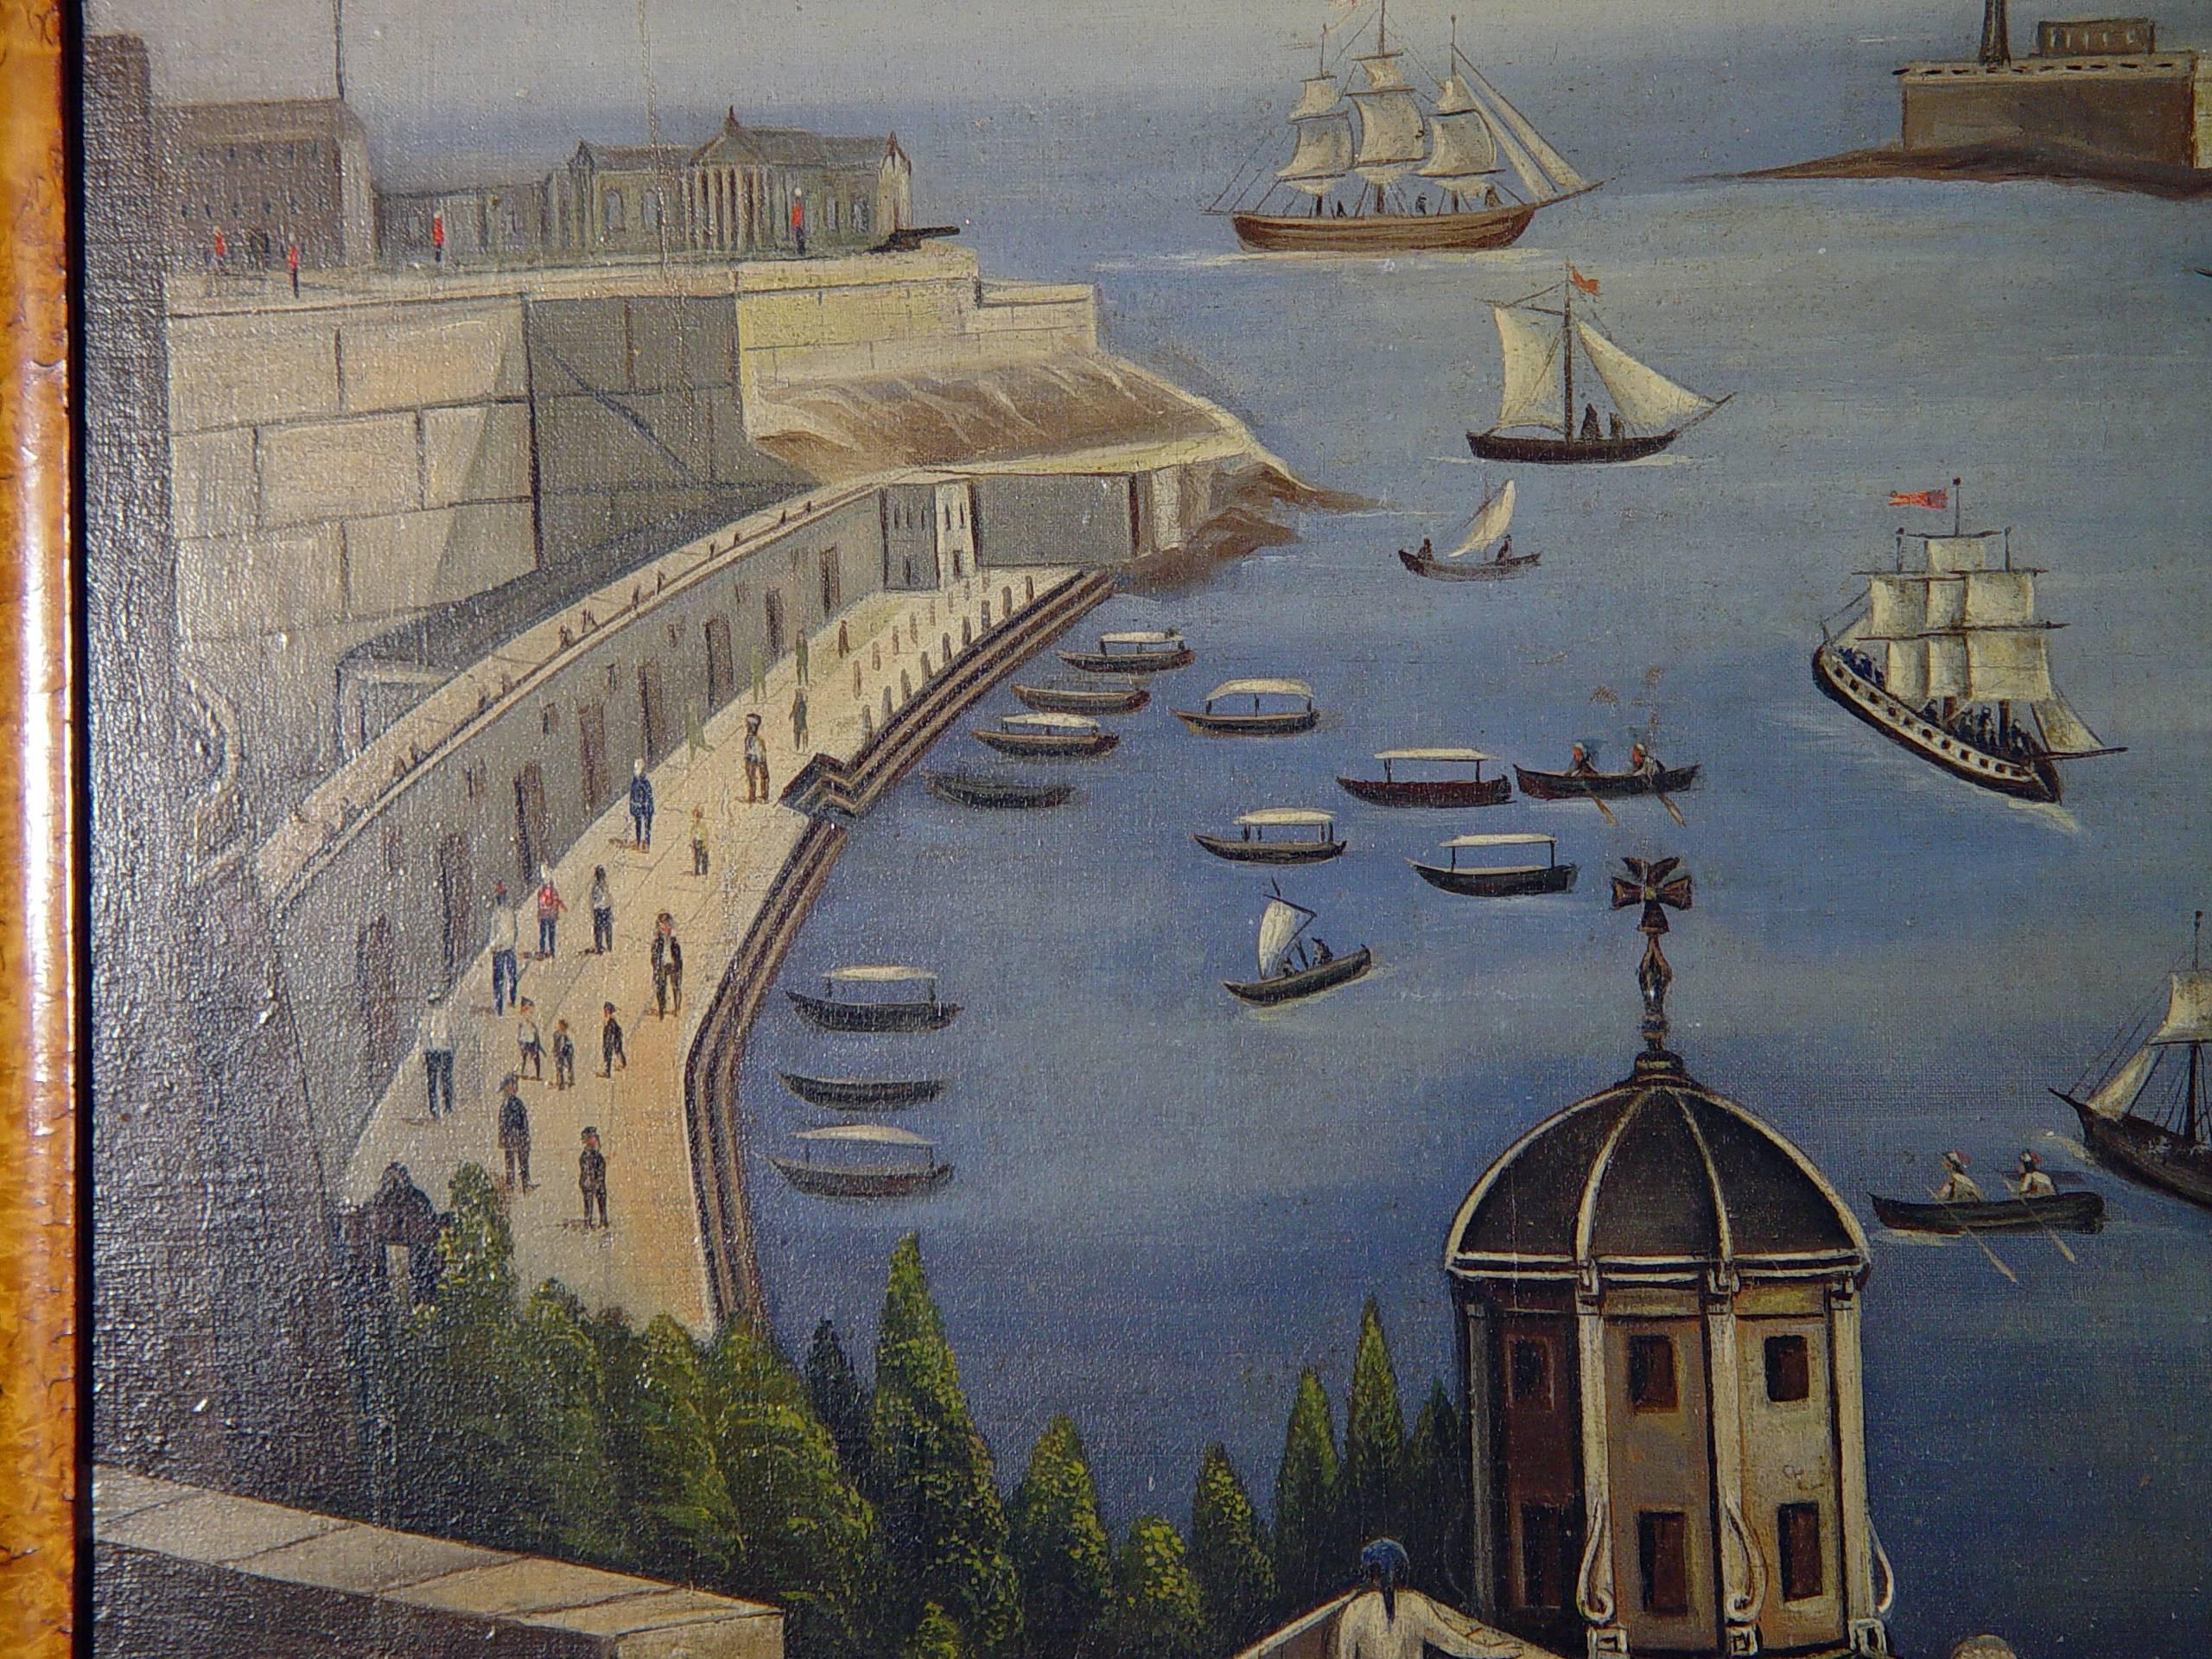 Großes Gemälde einer Hafenszene mit einer Ansicht des Hafens von Valletta, Malta,
Öl auf Leinwand,
Mitte des 19. Jahrhunderts.

Das massive Gemälde wurde von den oberen Gärten aus gemalt, die die Westseite des Hafens überblicken. Es zeigt die